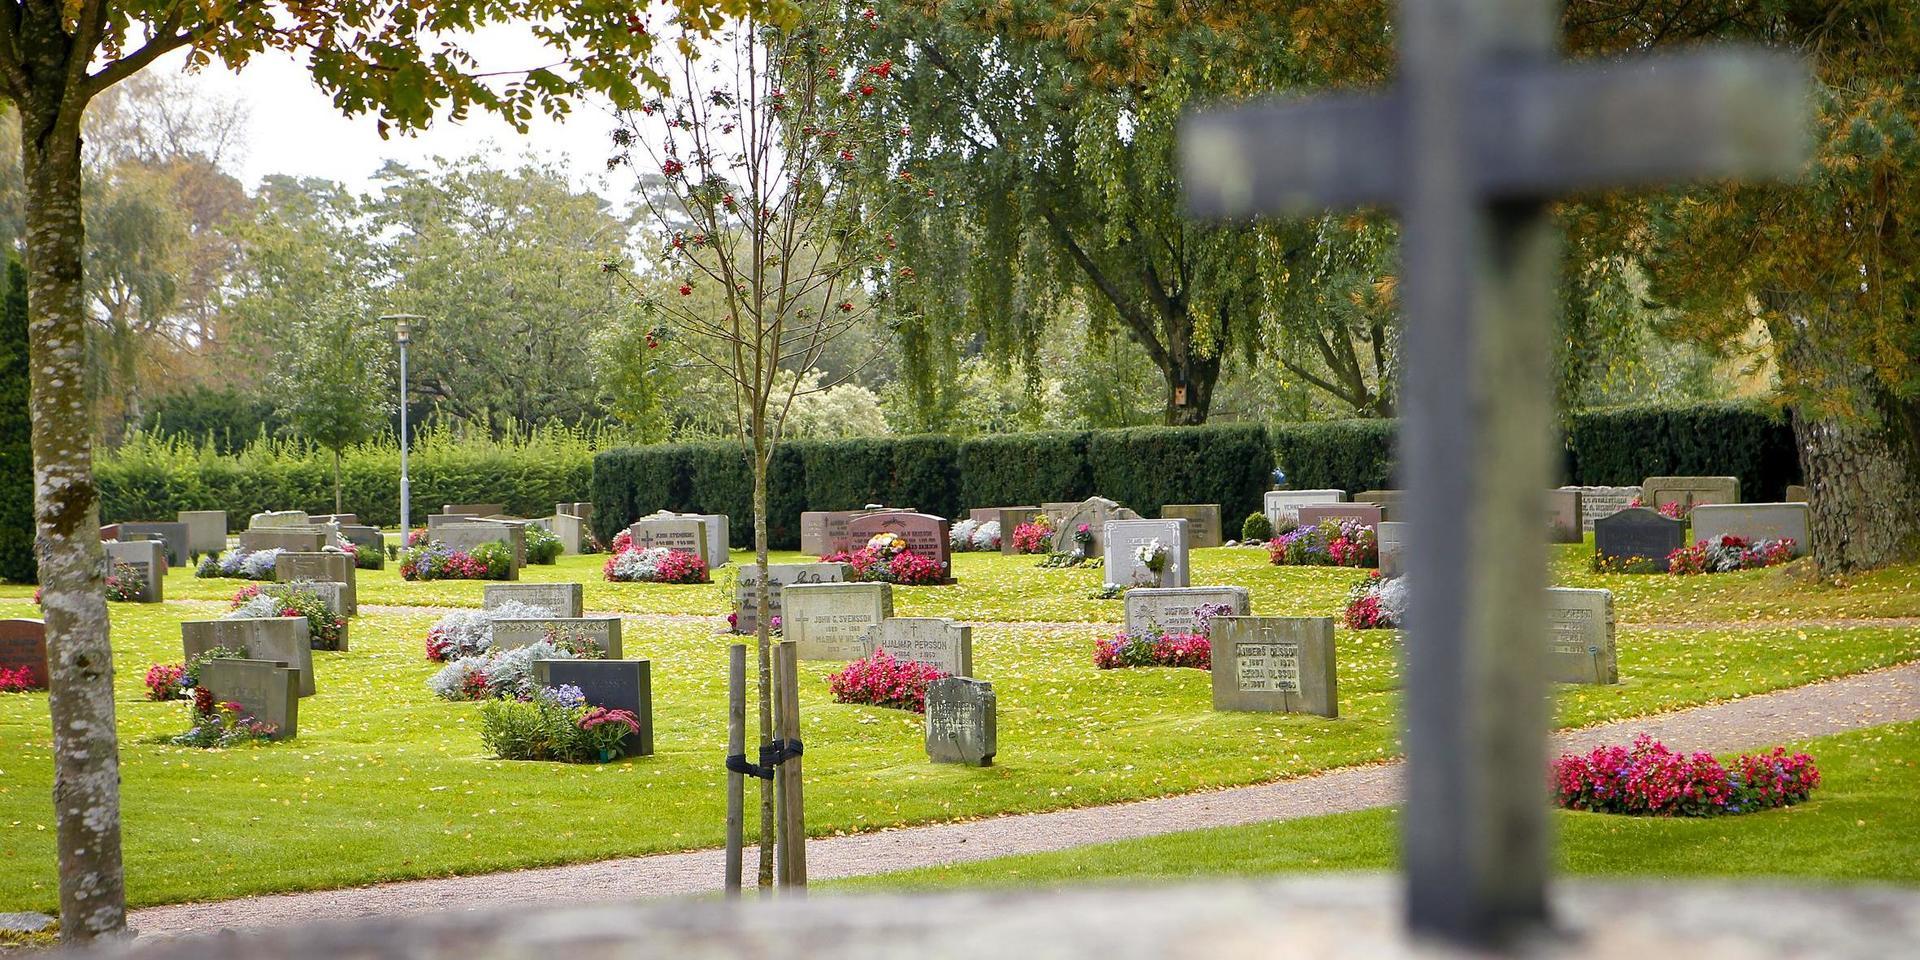 Kostnaderna för skötseln av våra begravningsplatser/kyrkogårdar ska belasta begravningsavgiften, skriver debattören.